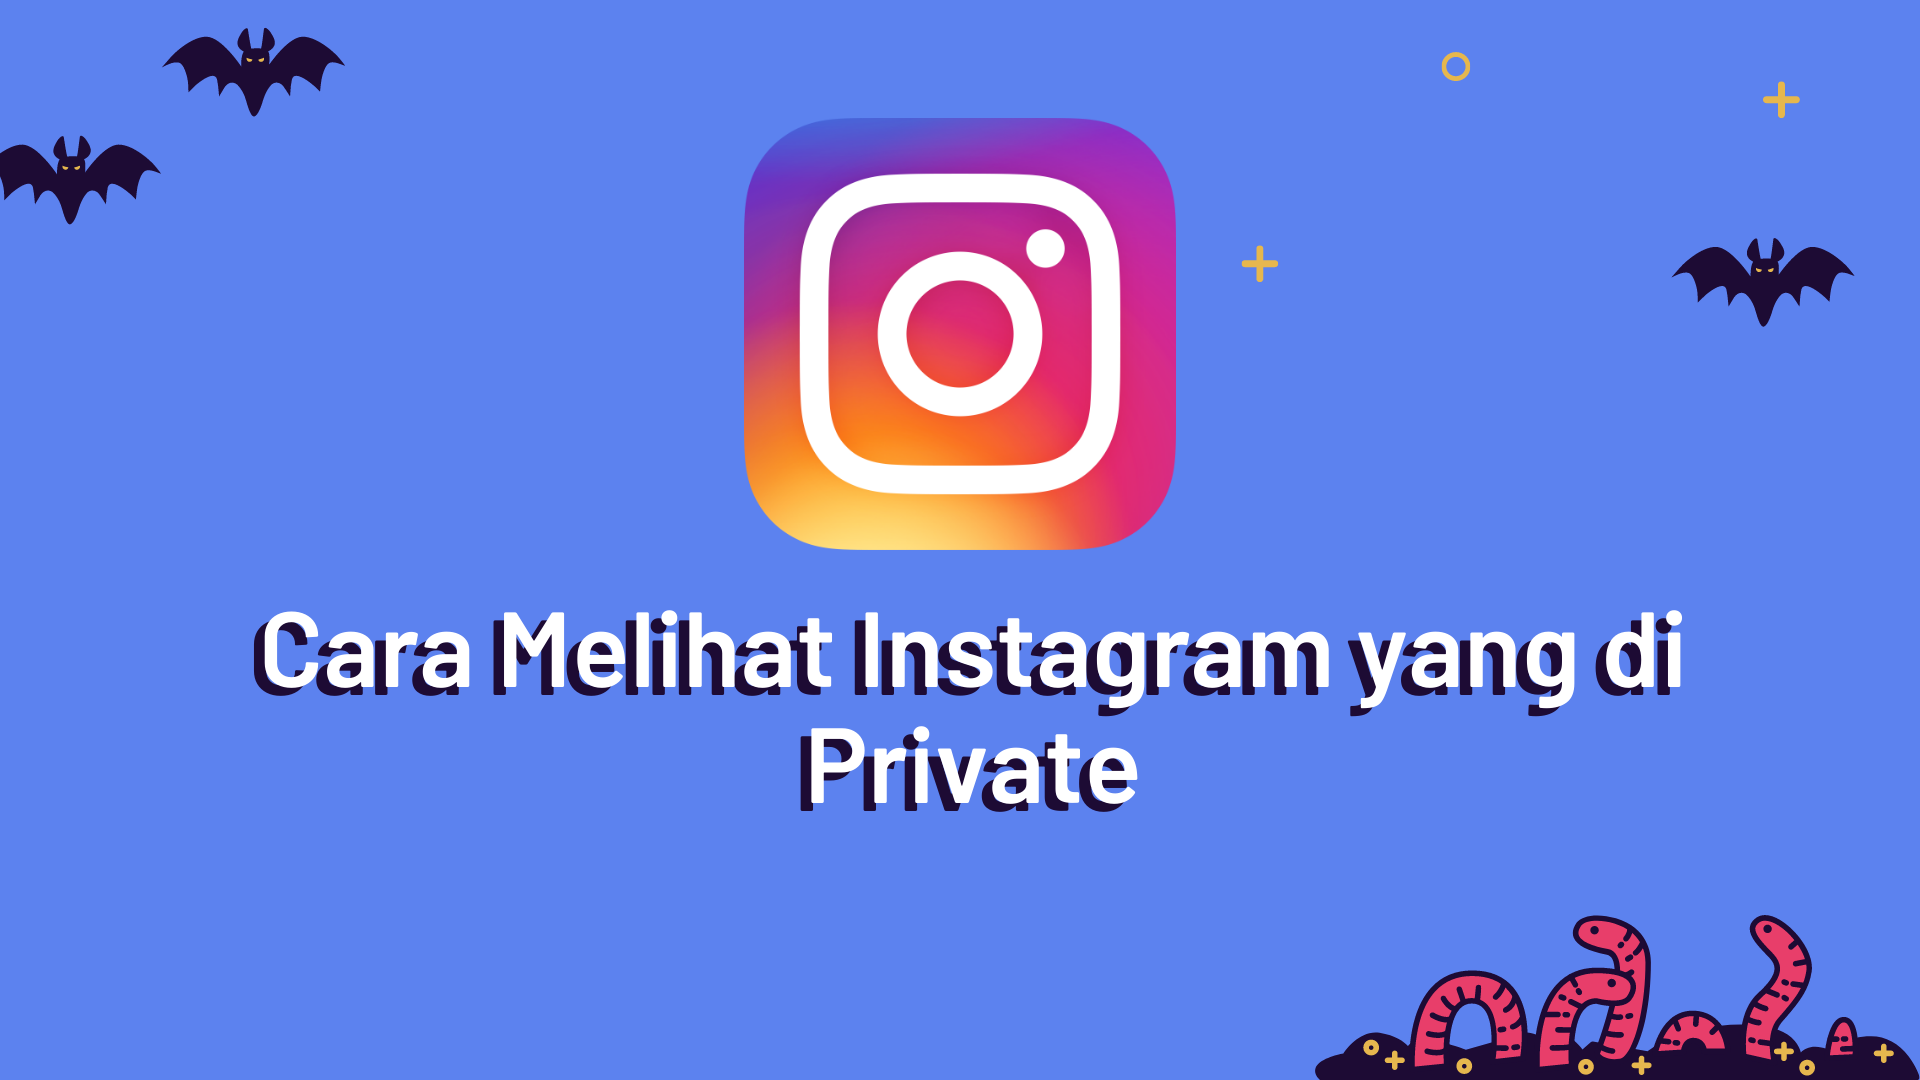 Cara Melihat Instagram yang di Private